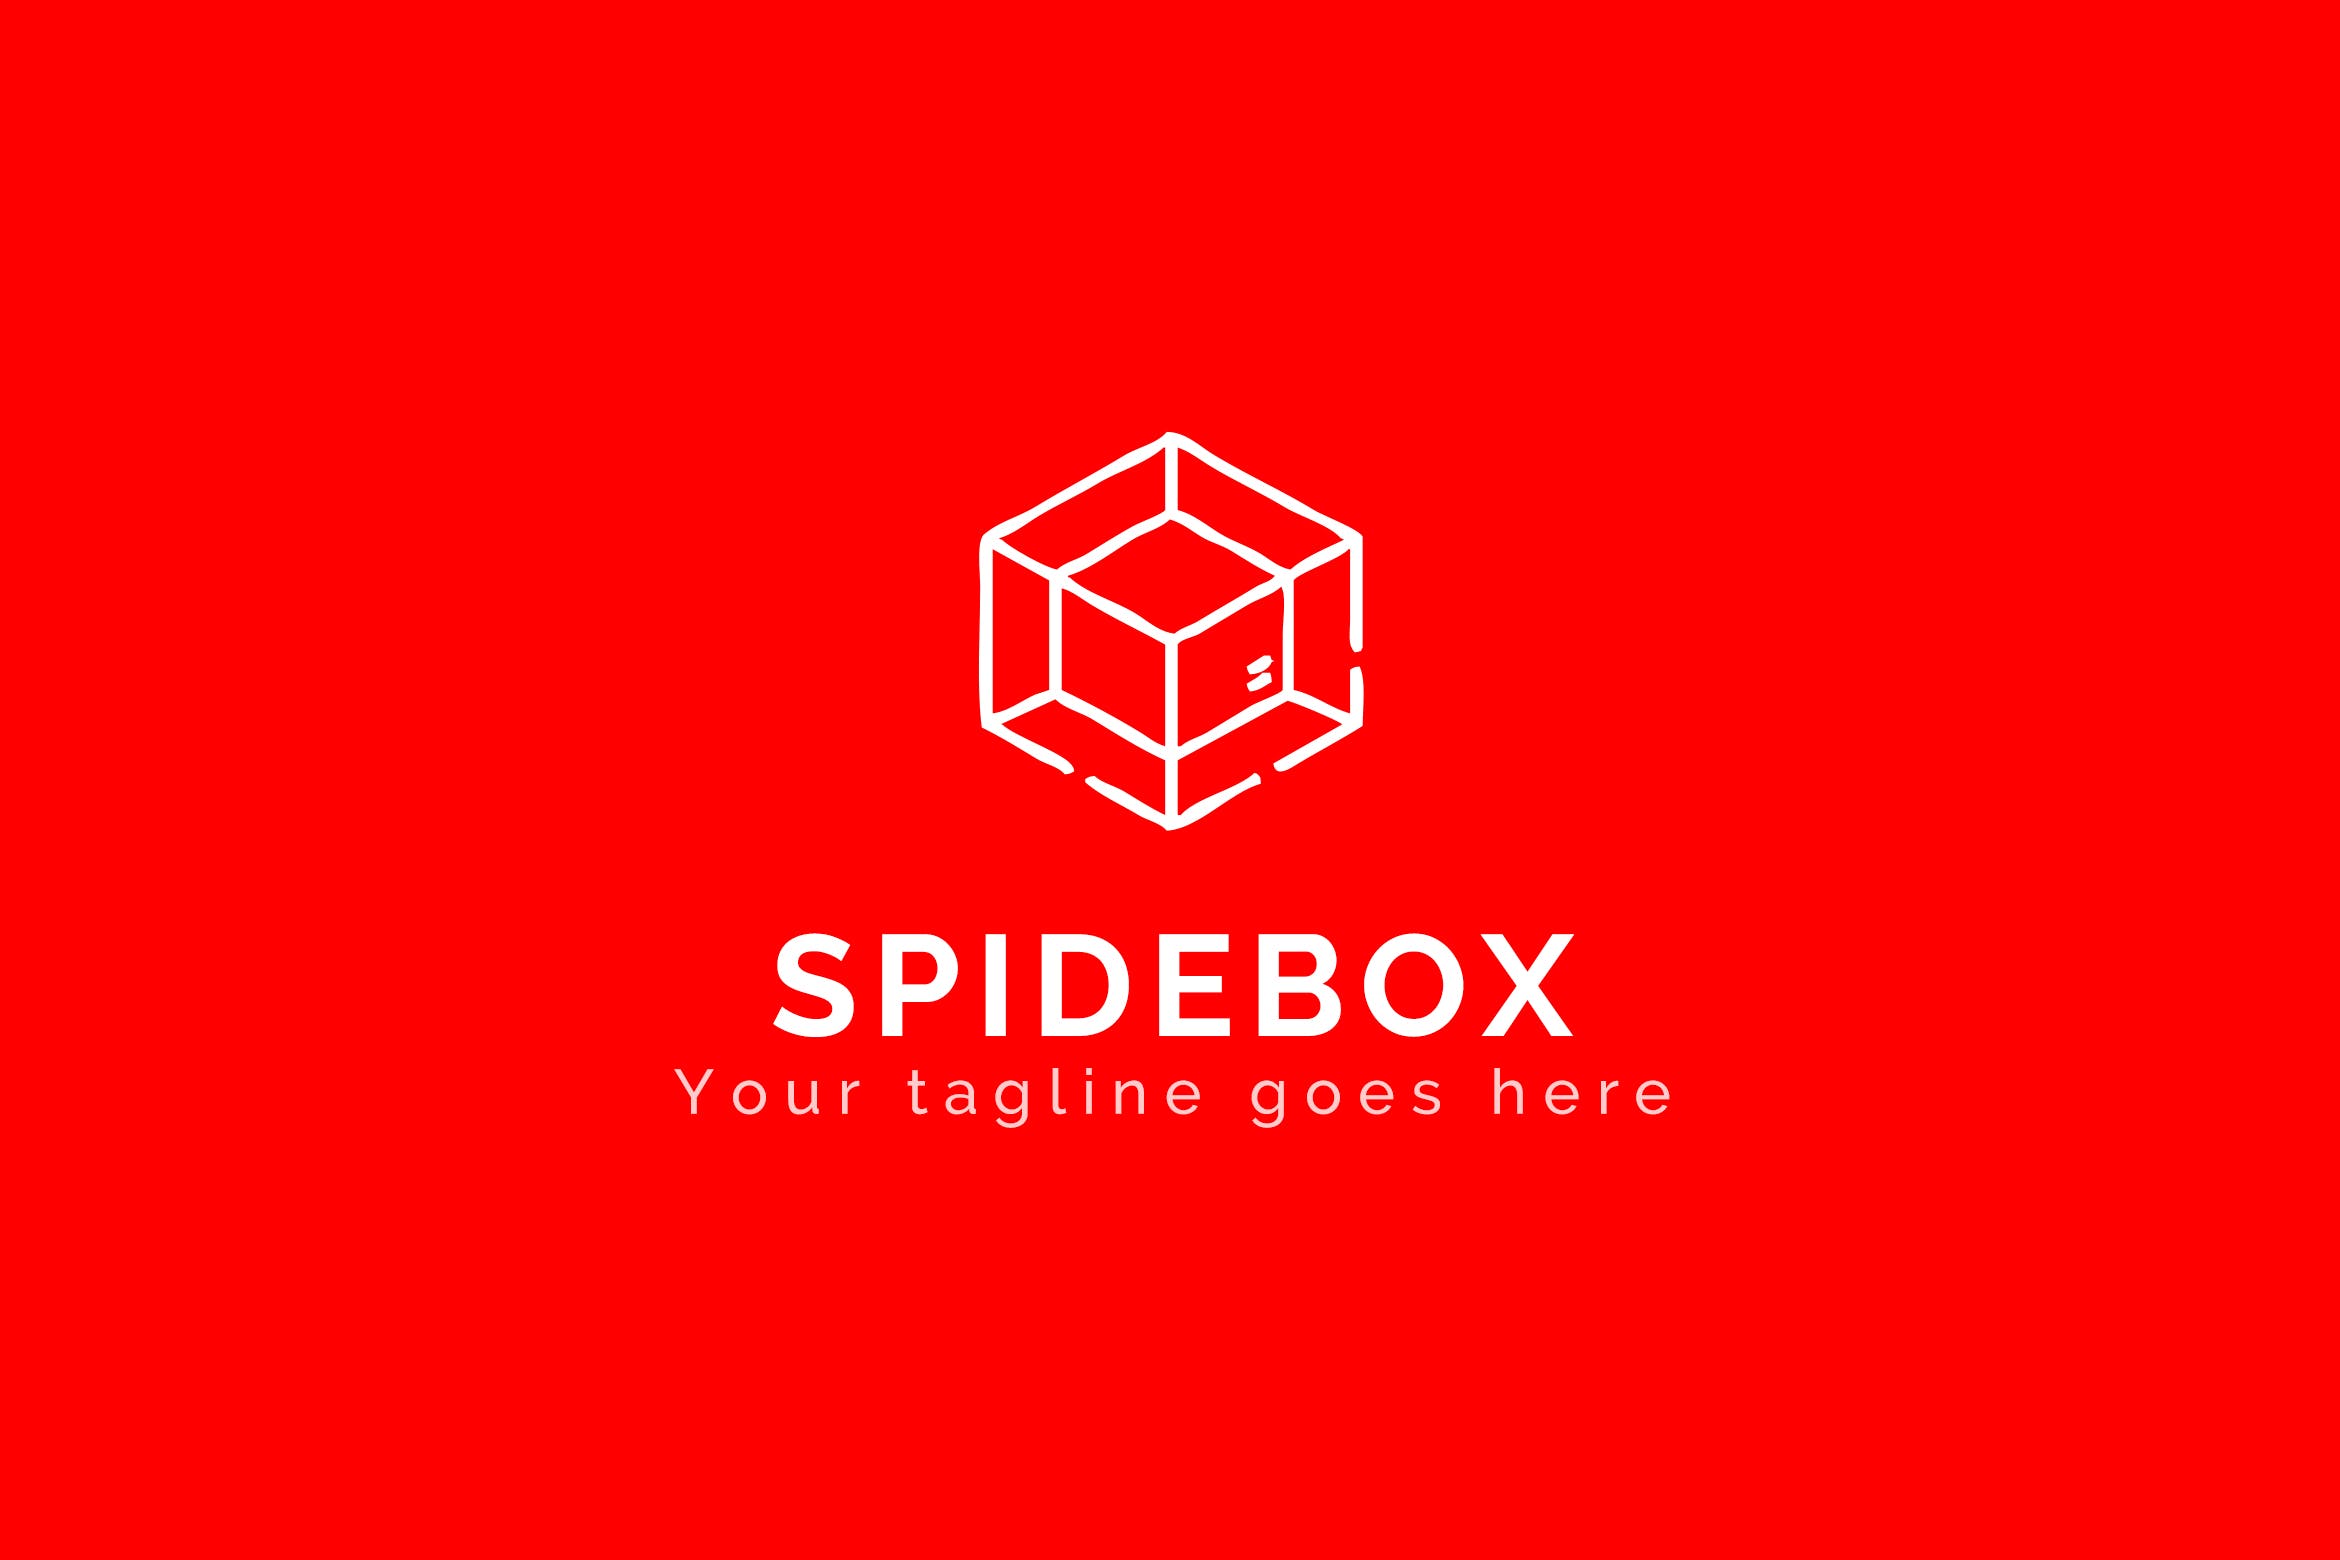 蜘蛛网图形品牌Logo设计第一素材精选模板 Spidebox – Premium Logo Template插图